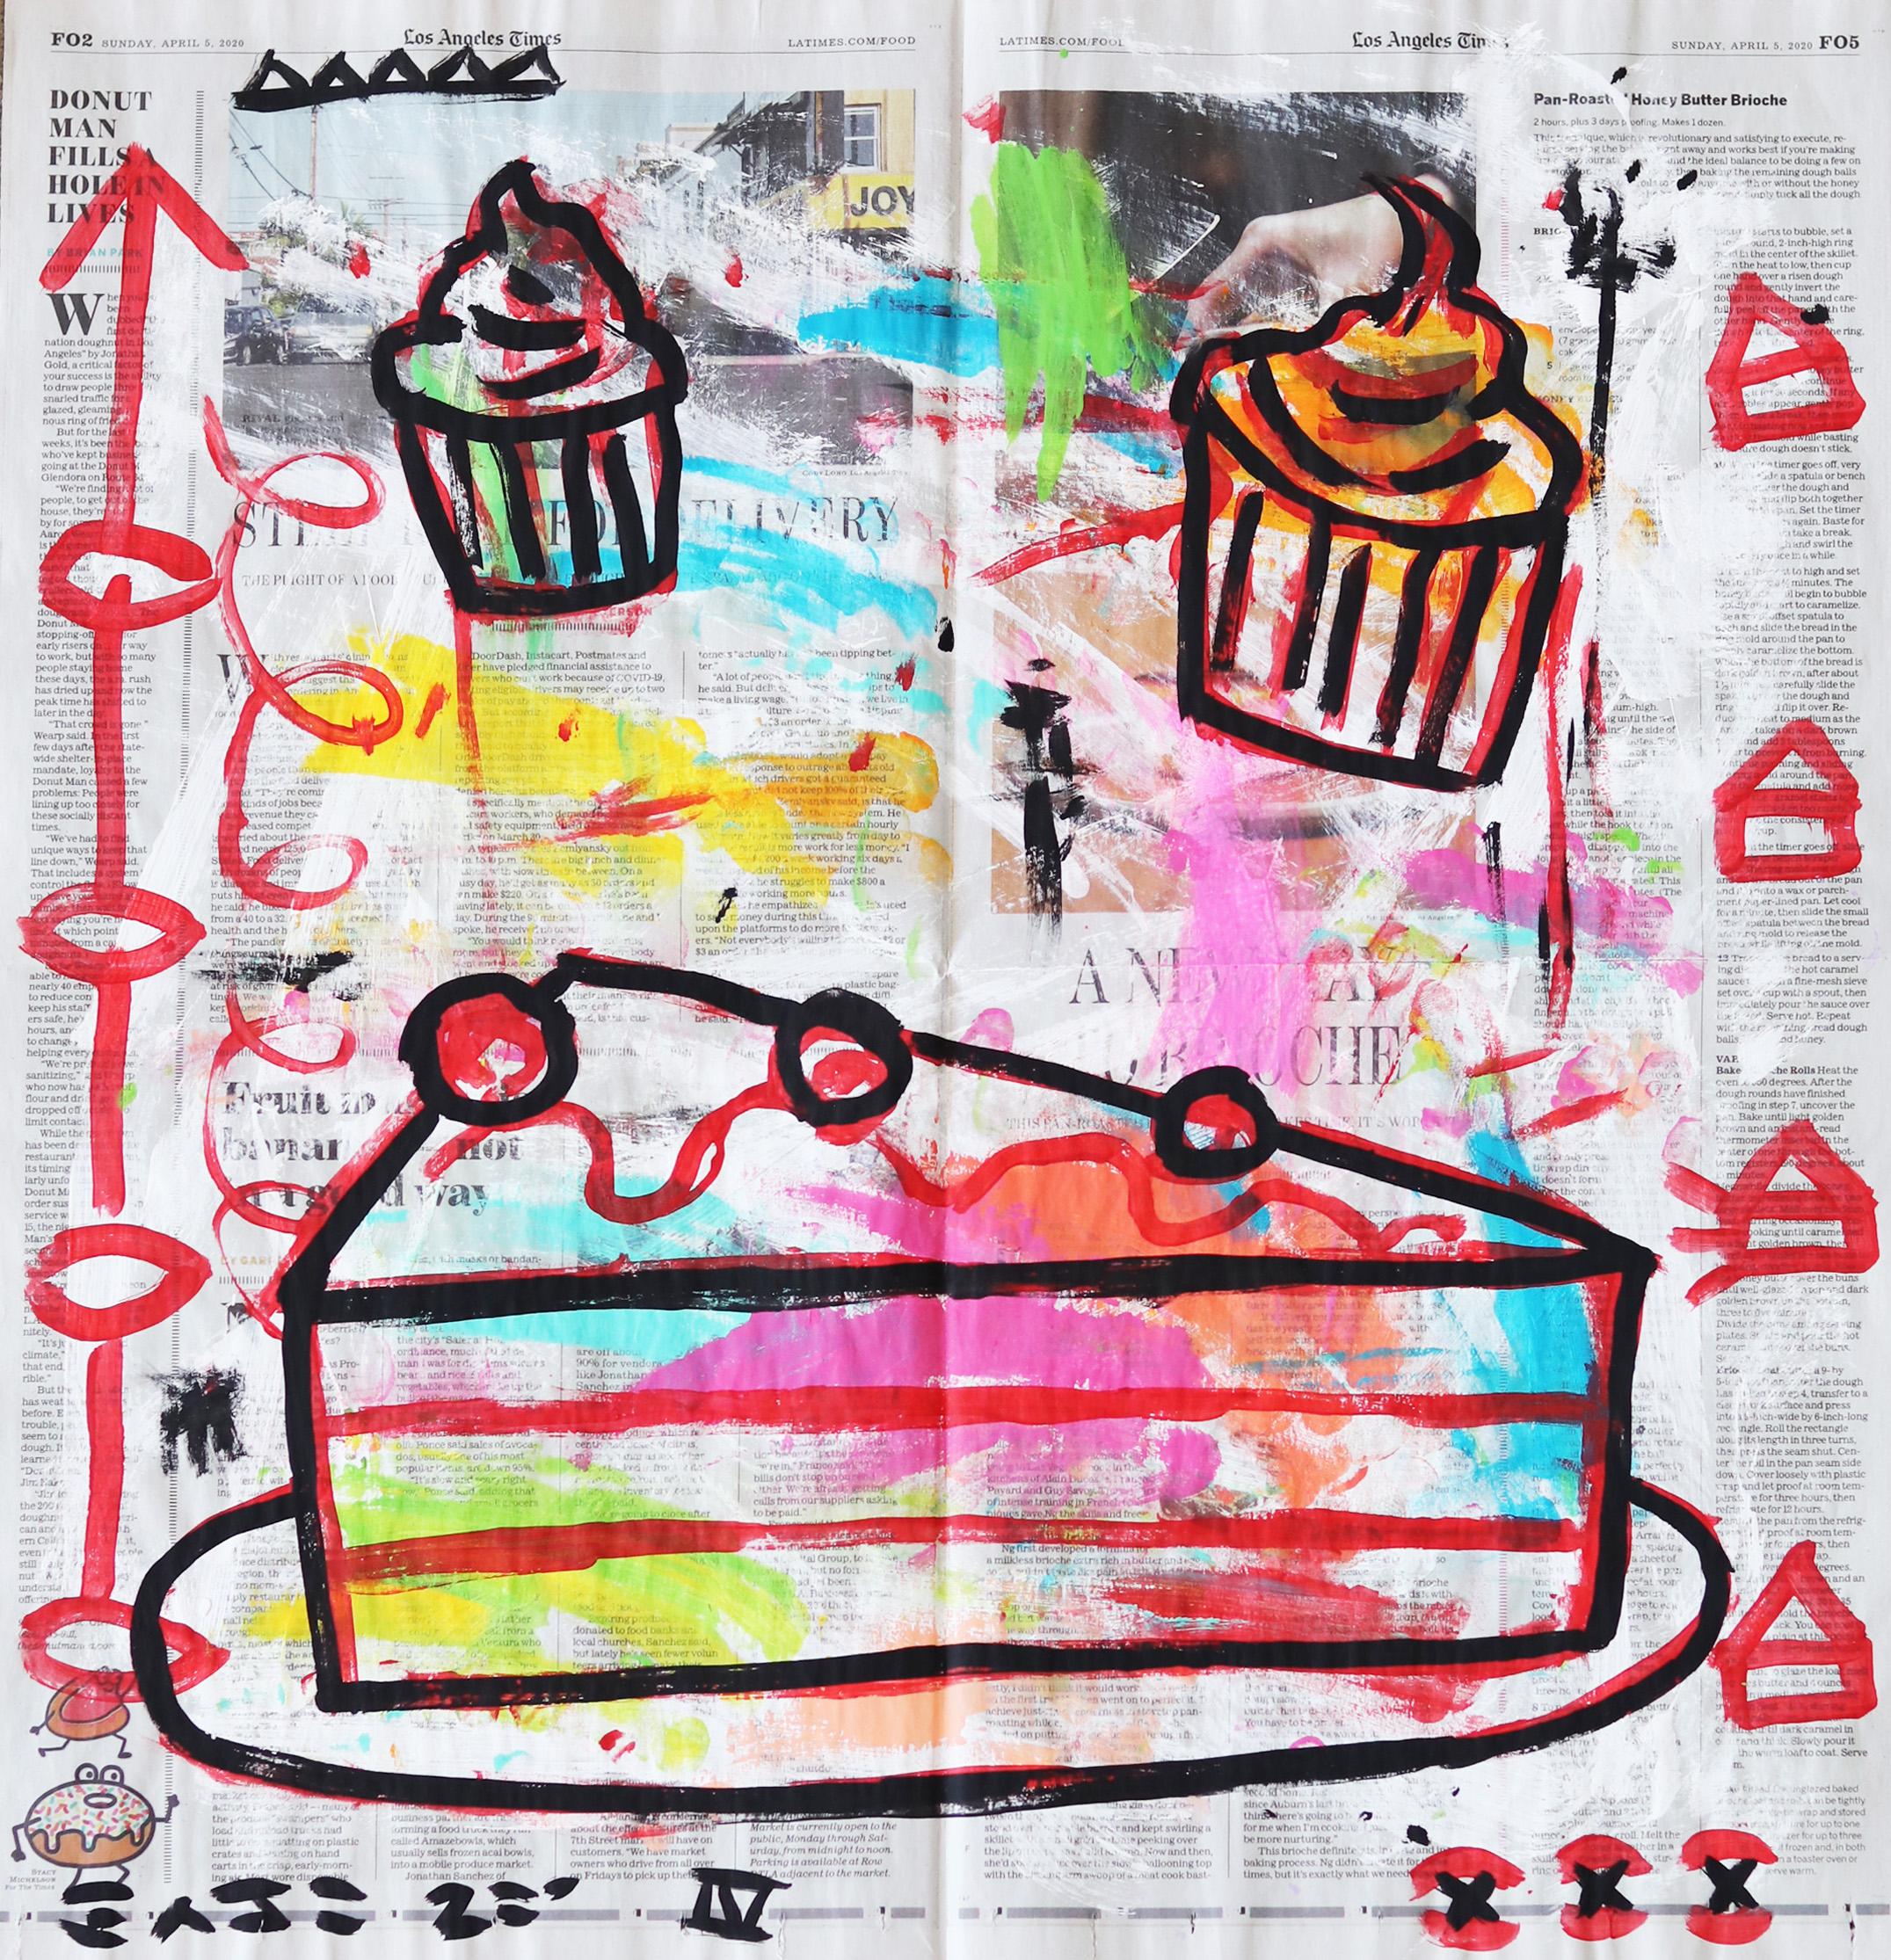 Gary John Still-Life Painting - "Let Them Eat Cupcakes" Dessert Inspired Pop Art Contemporary Original